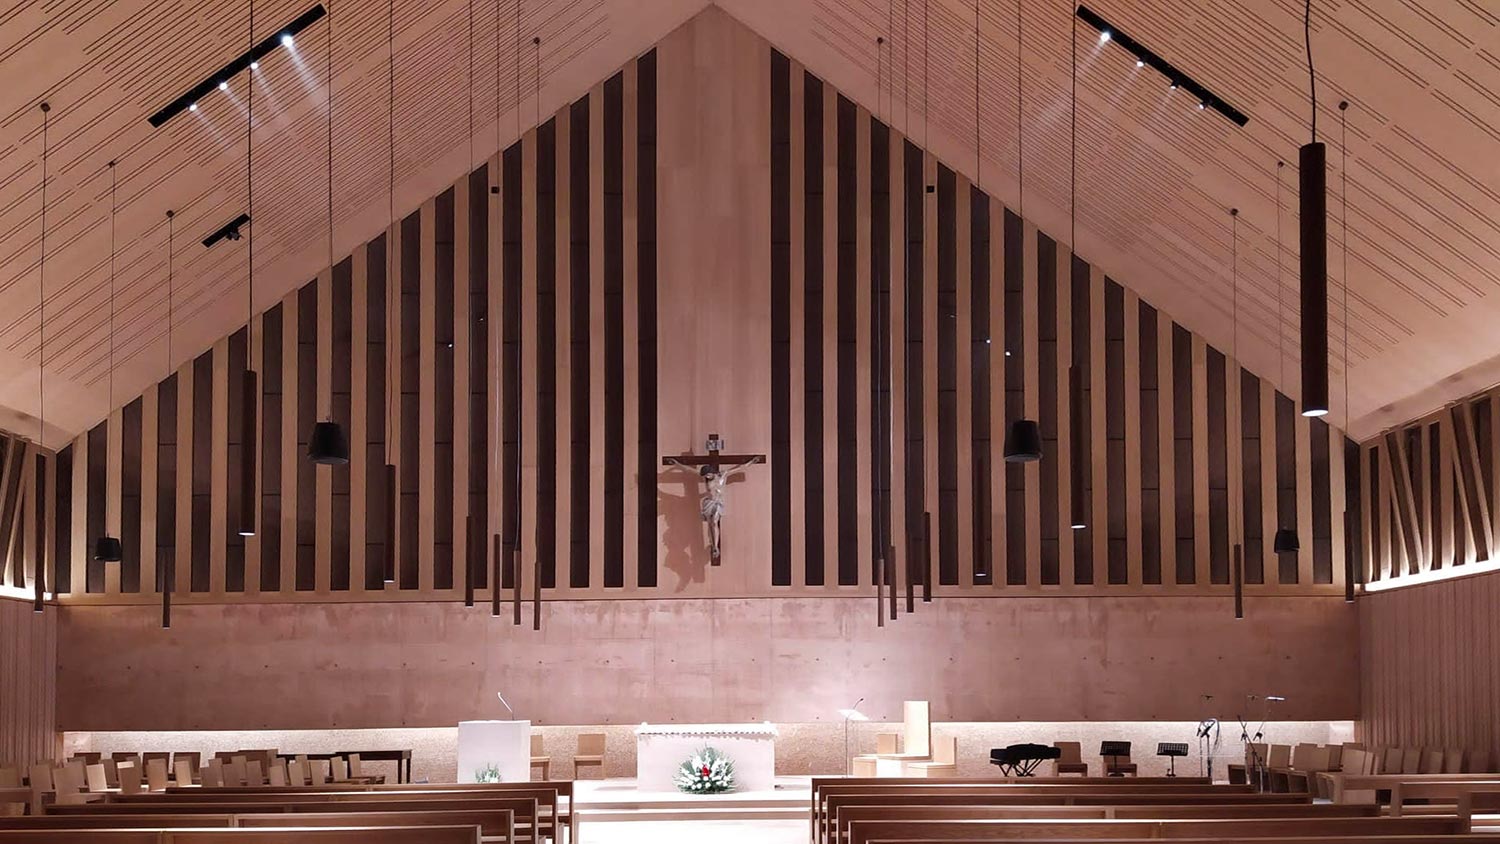 Chiesa parrocchiale di Pegognaga (MN) – Correzione acustica